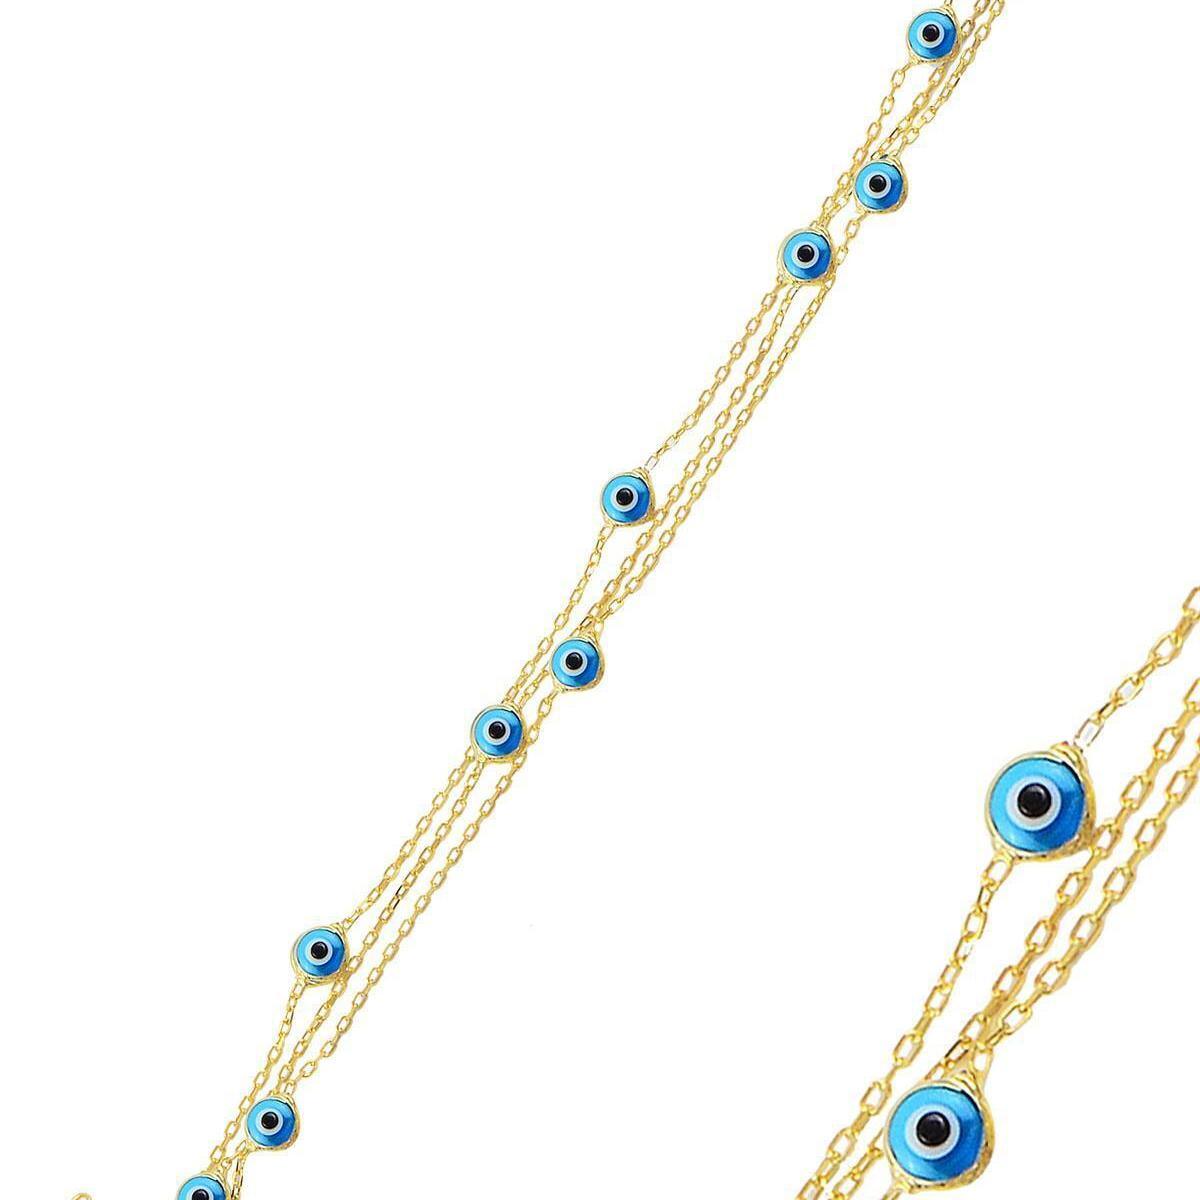 Blue Evil Eye Bracelet • Protection Bracelet From Evil • Gift For Her - Trending Silver Gifts